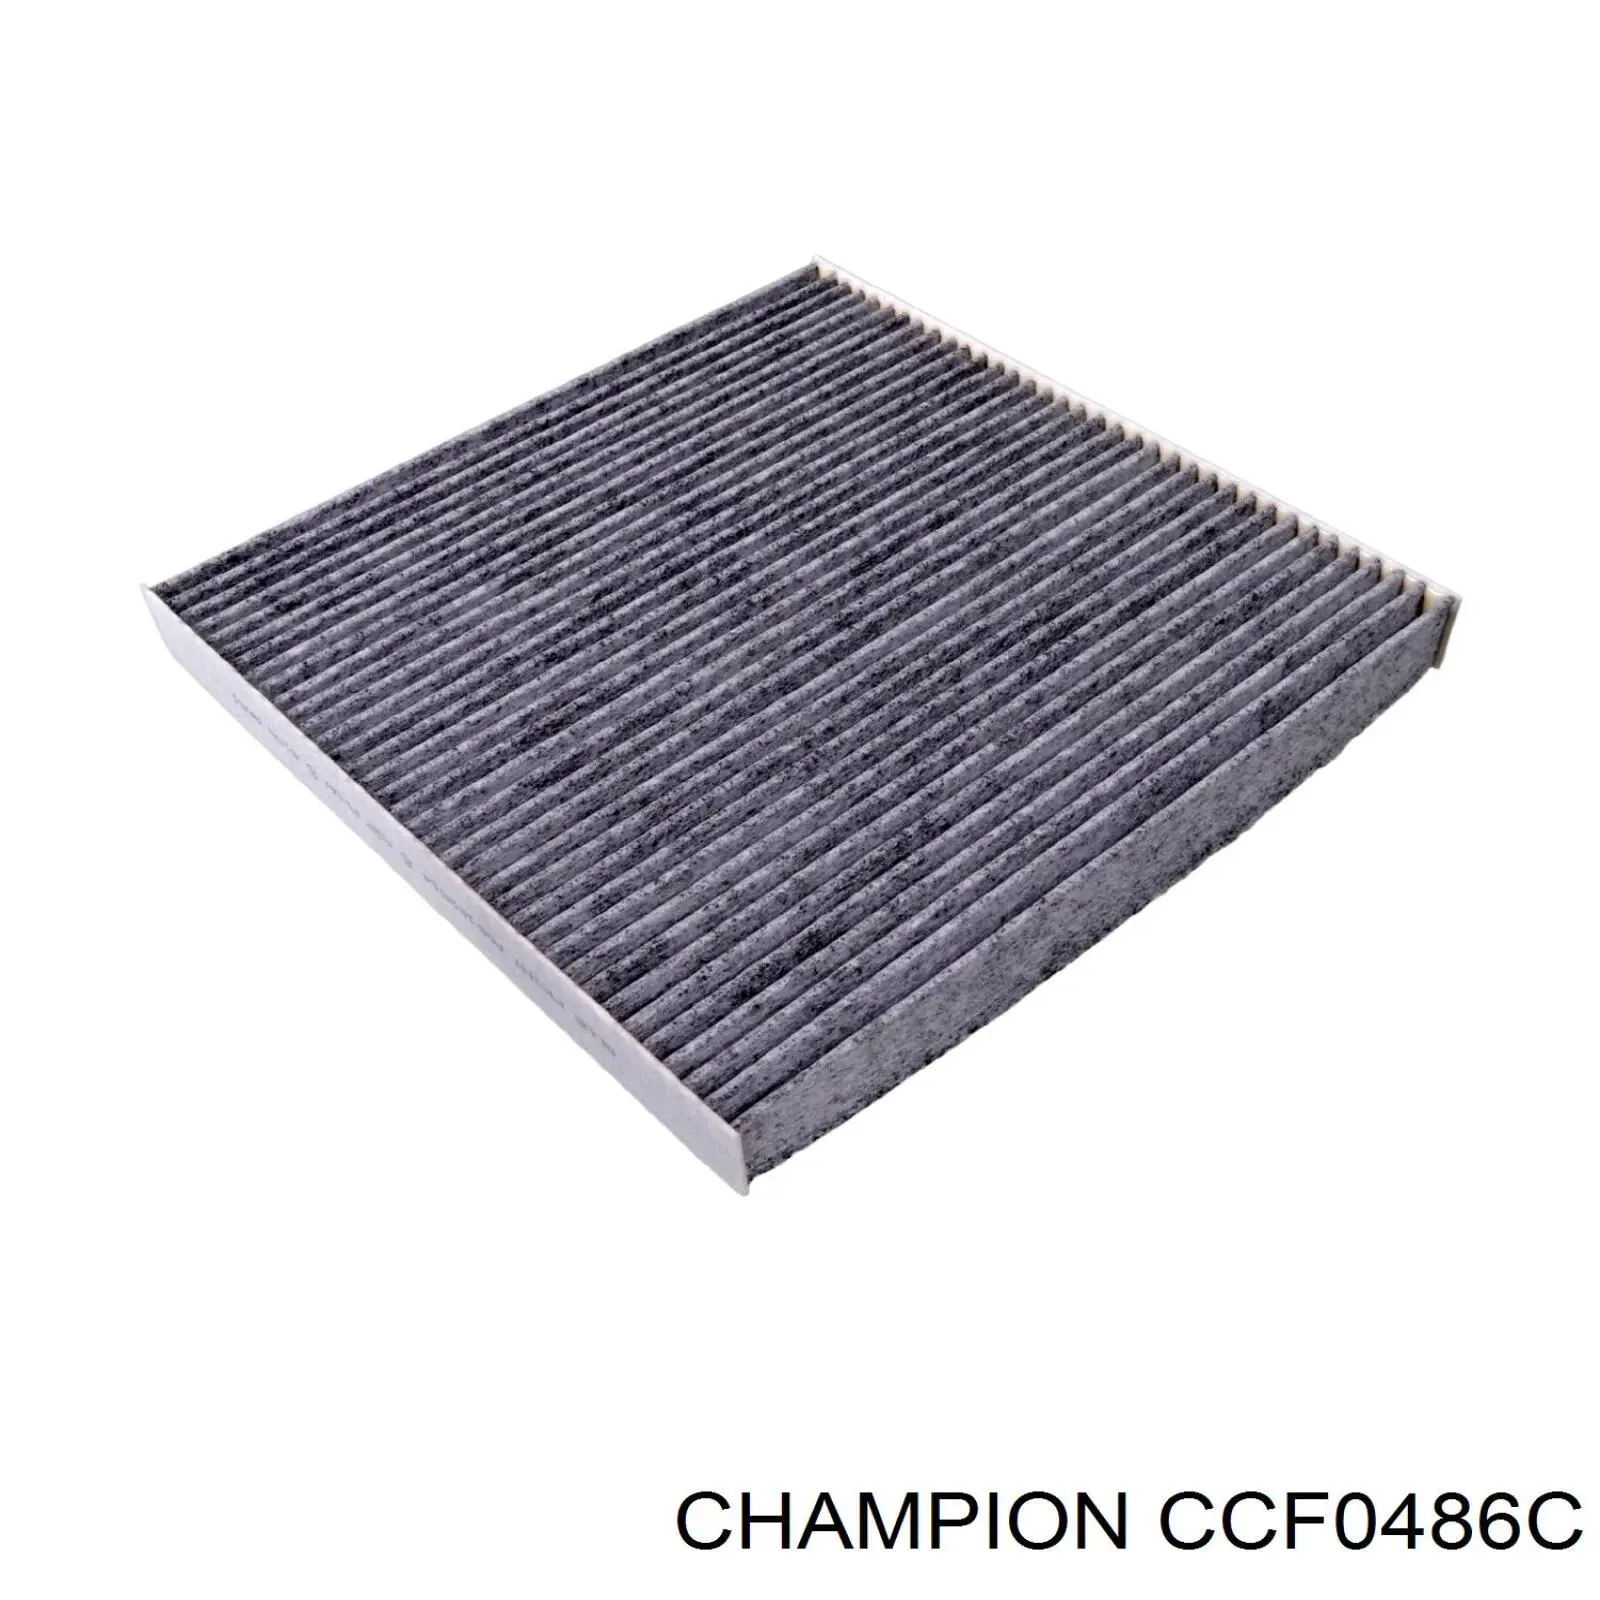 CCF0486C Champion filtro habitáculo